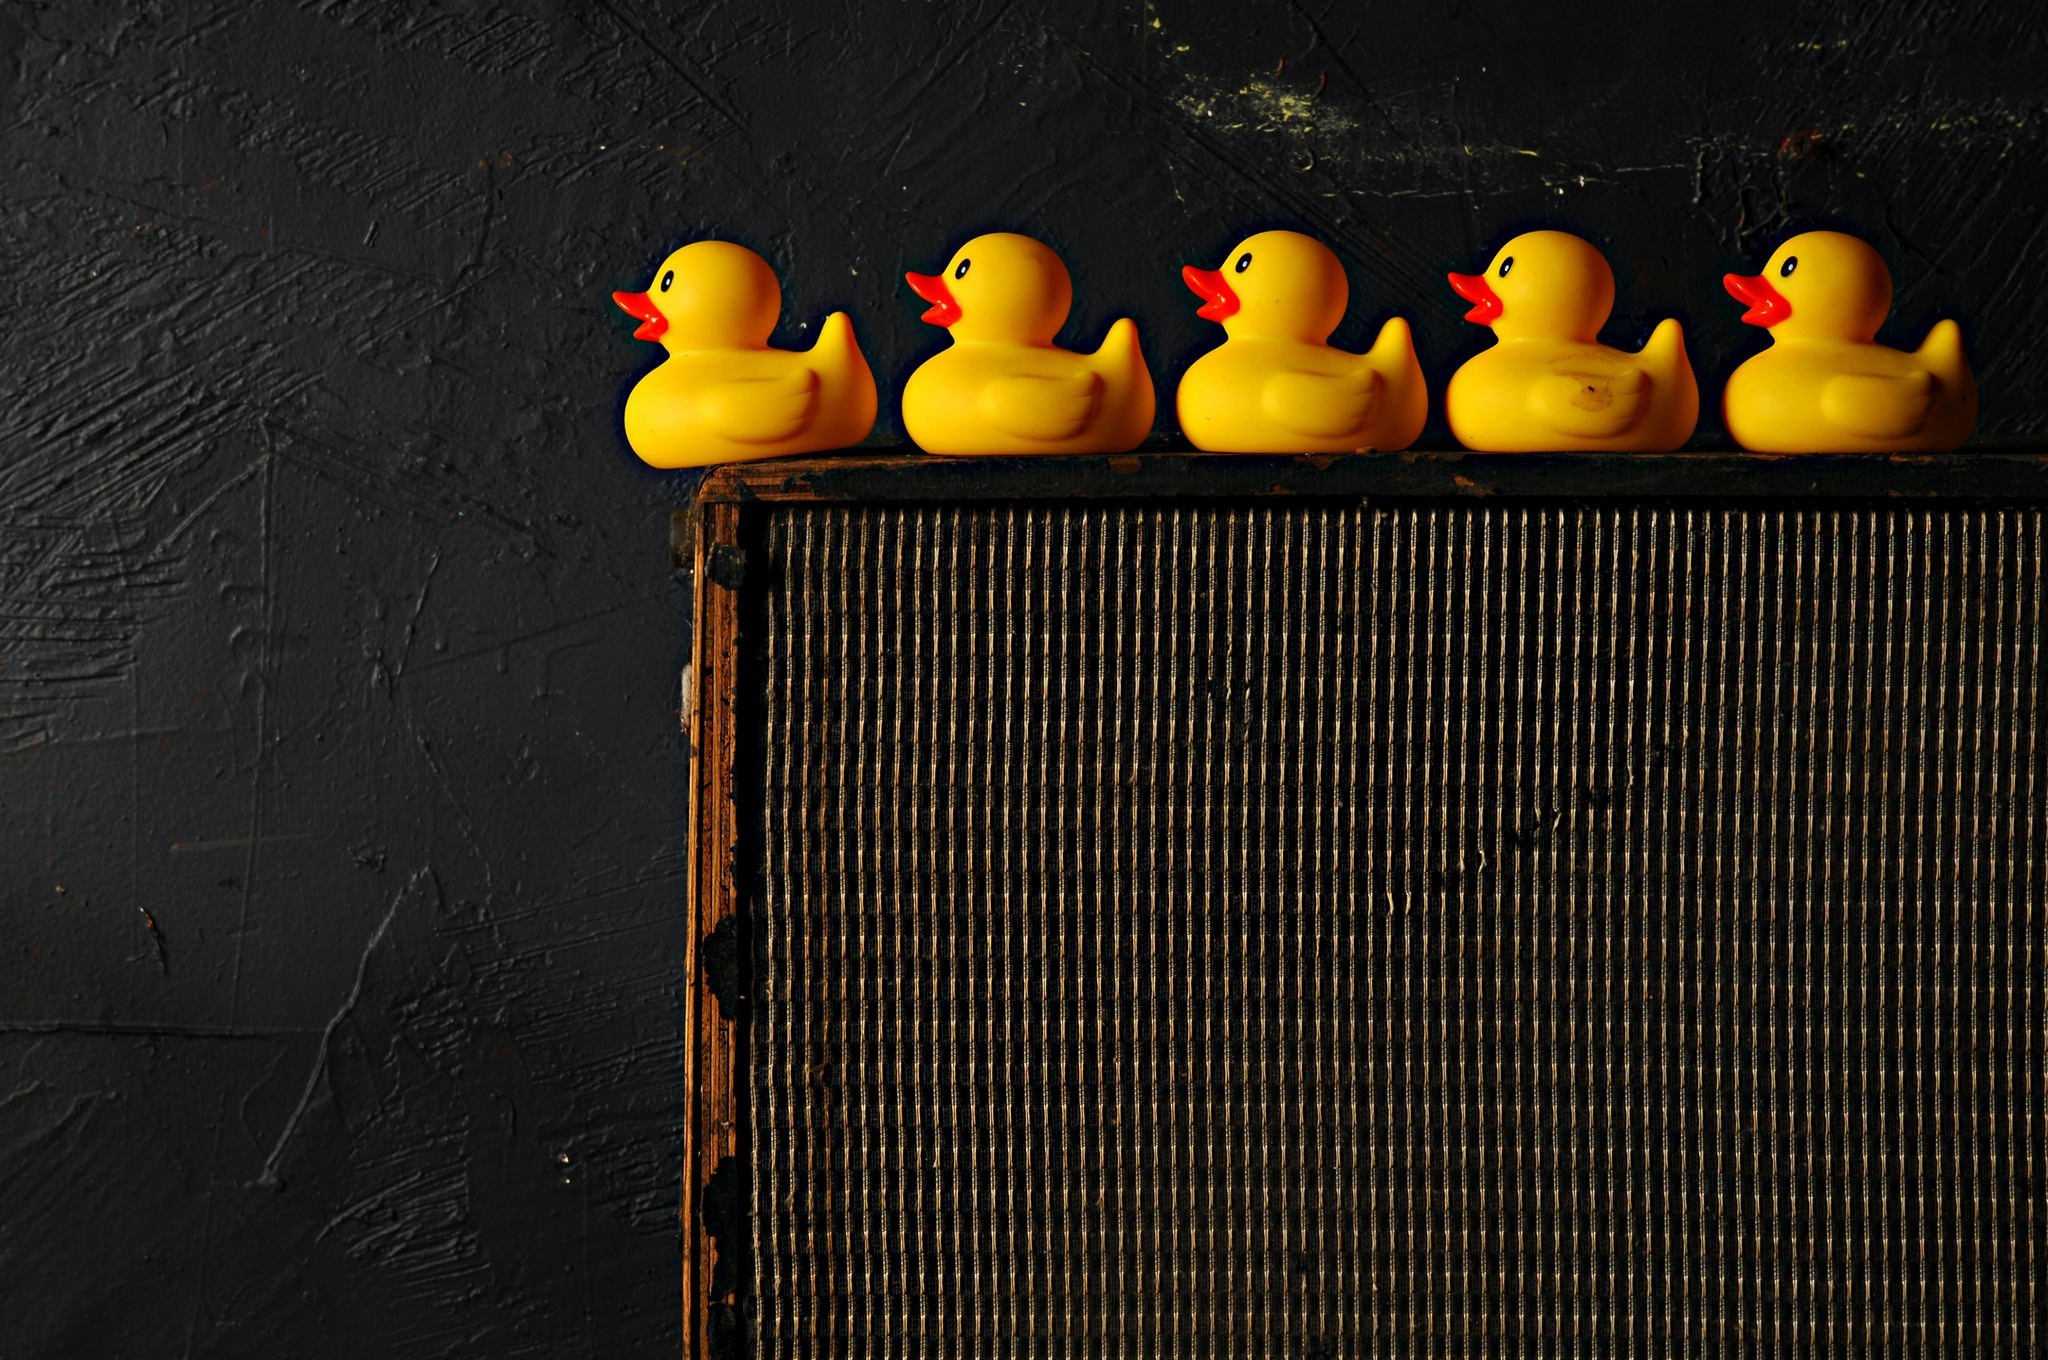 rubber ducks, Still life Wallpaper